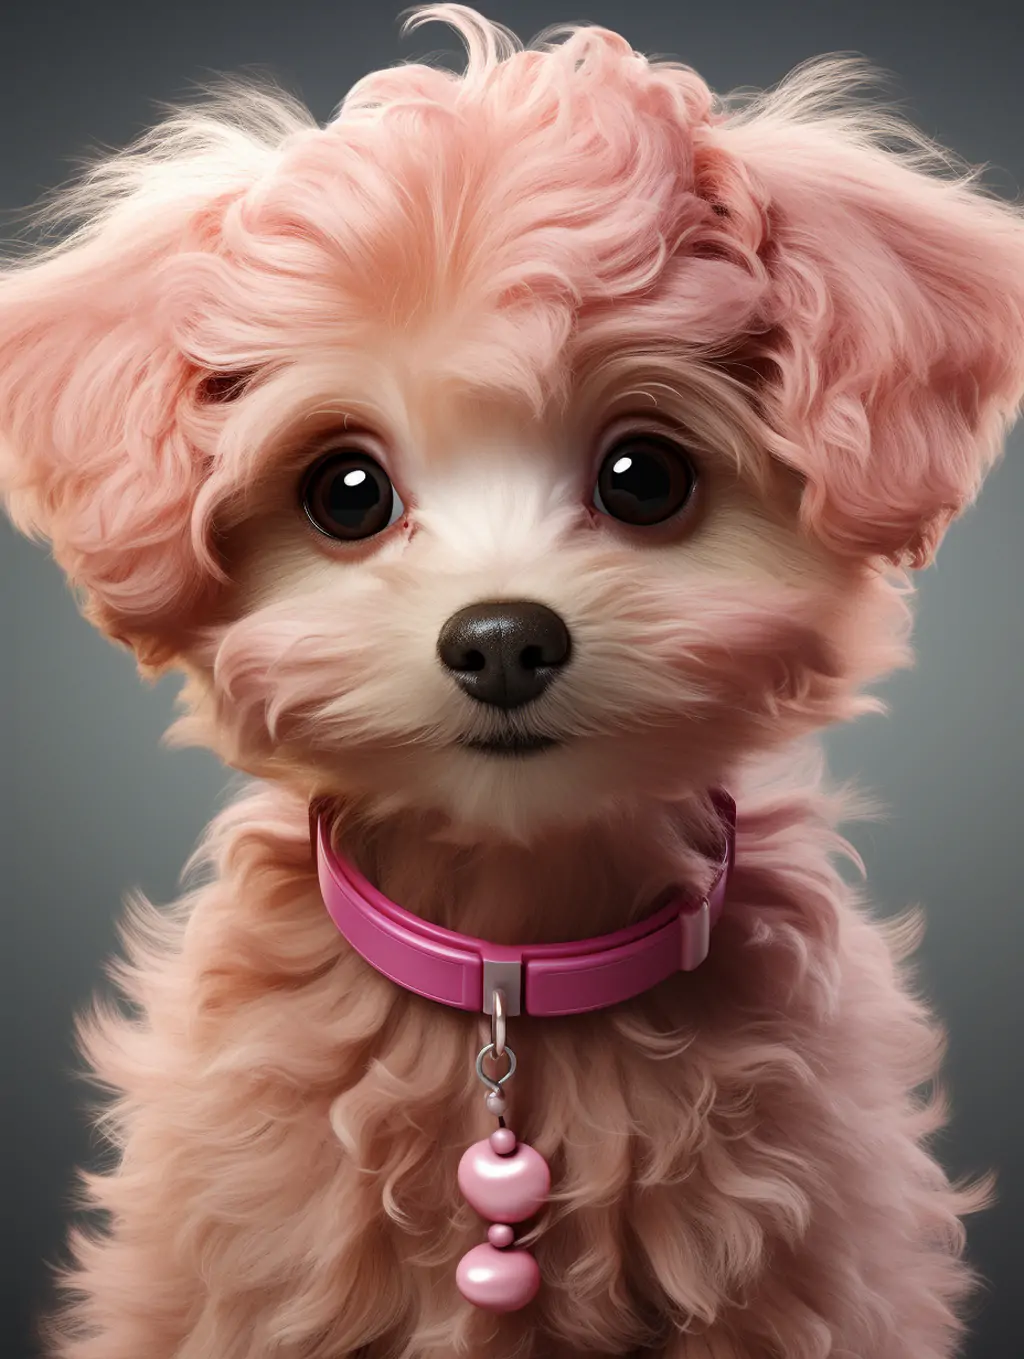 可爱粉色小狗马尔蒂波芭比娃娃造型艺术摄影写真海报midjourney关键词咒语分享 - Ai宇宙吧--Ai宇宙吧-